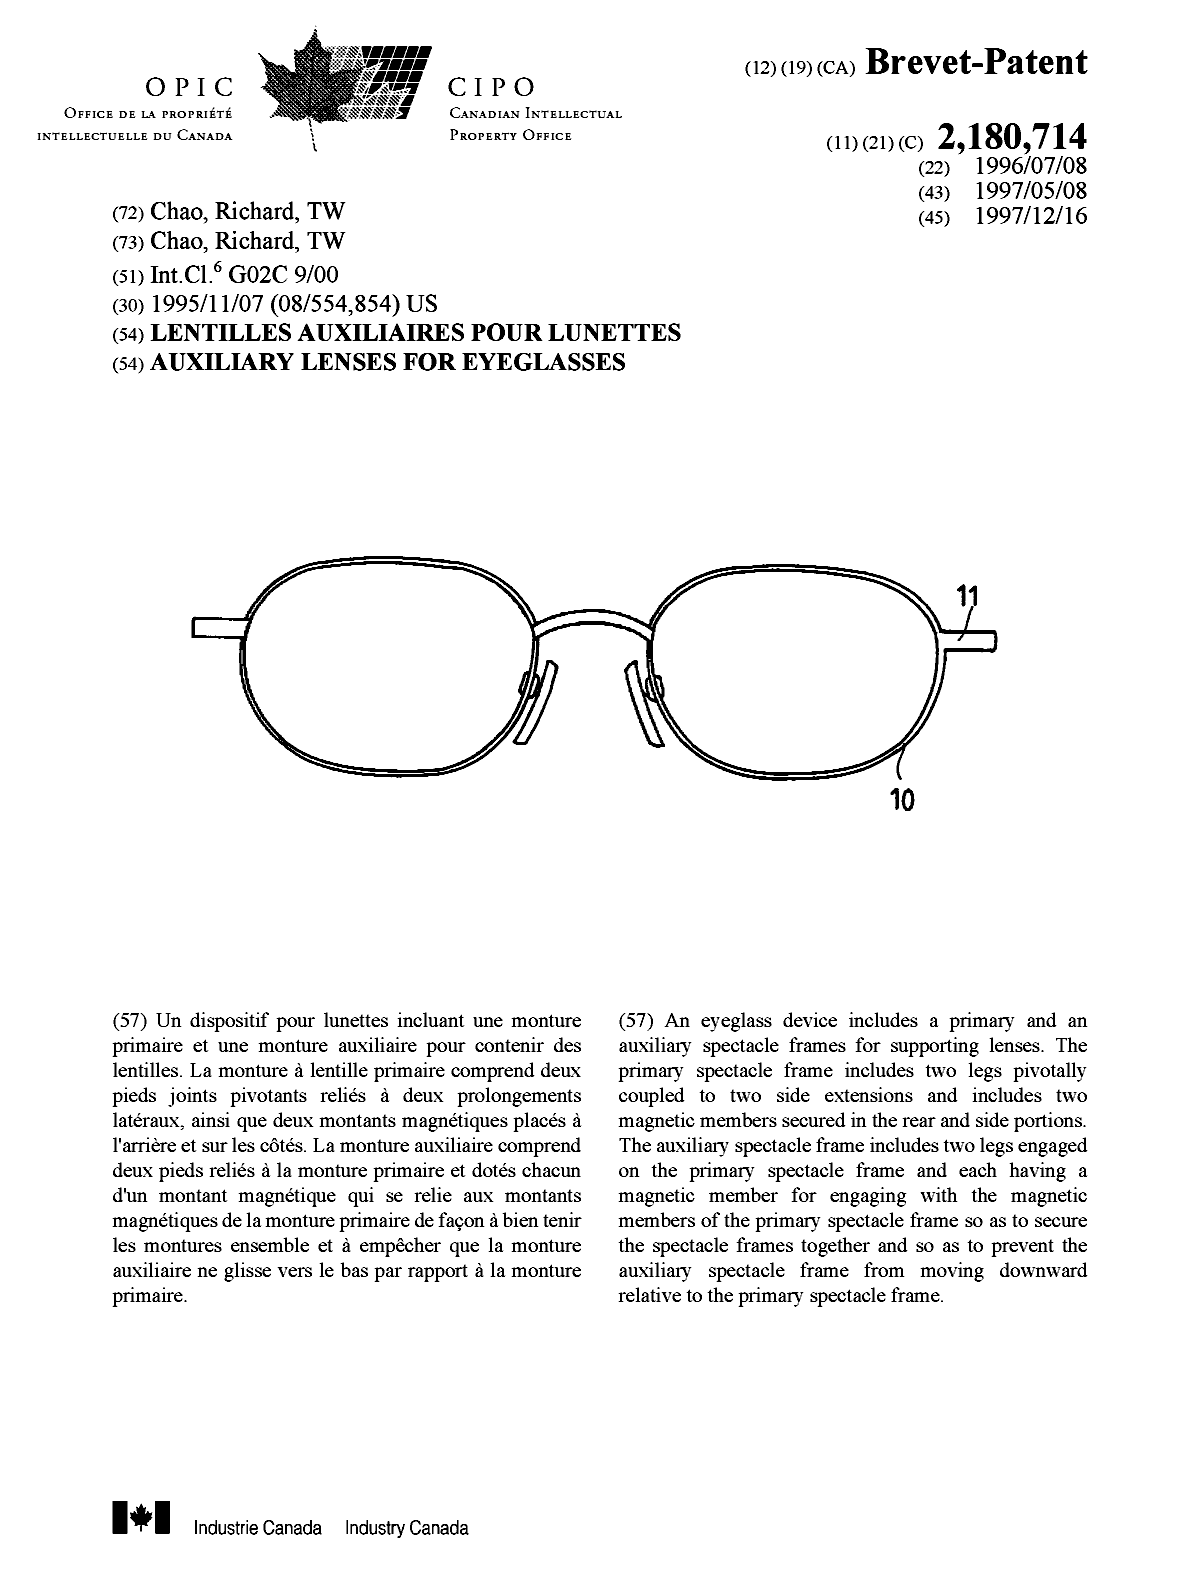 Document de brevet canadien 2180714. Page couverture 19980121. Image 1 de 1